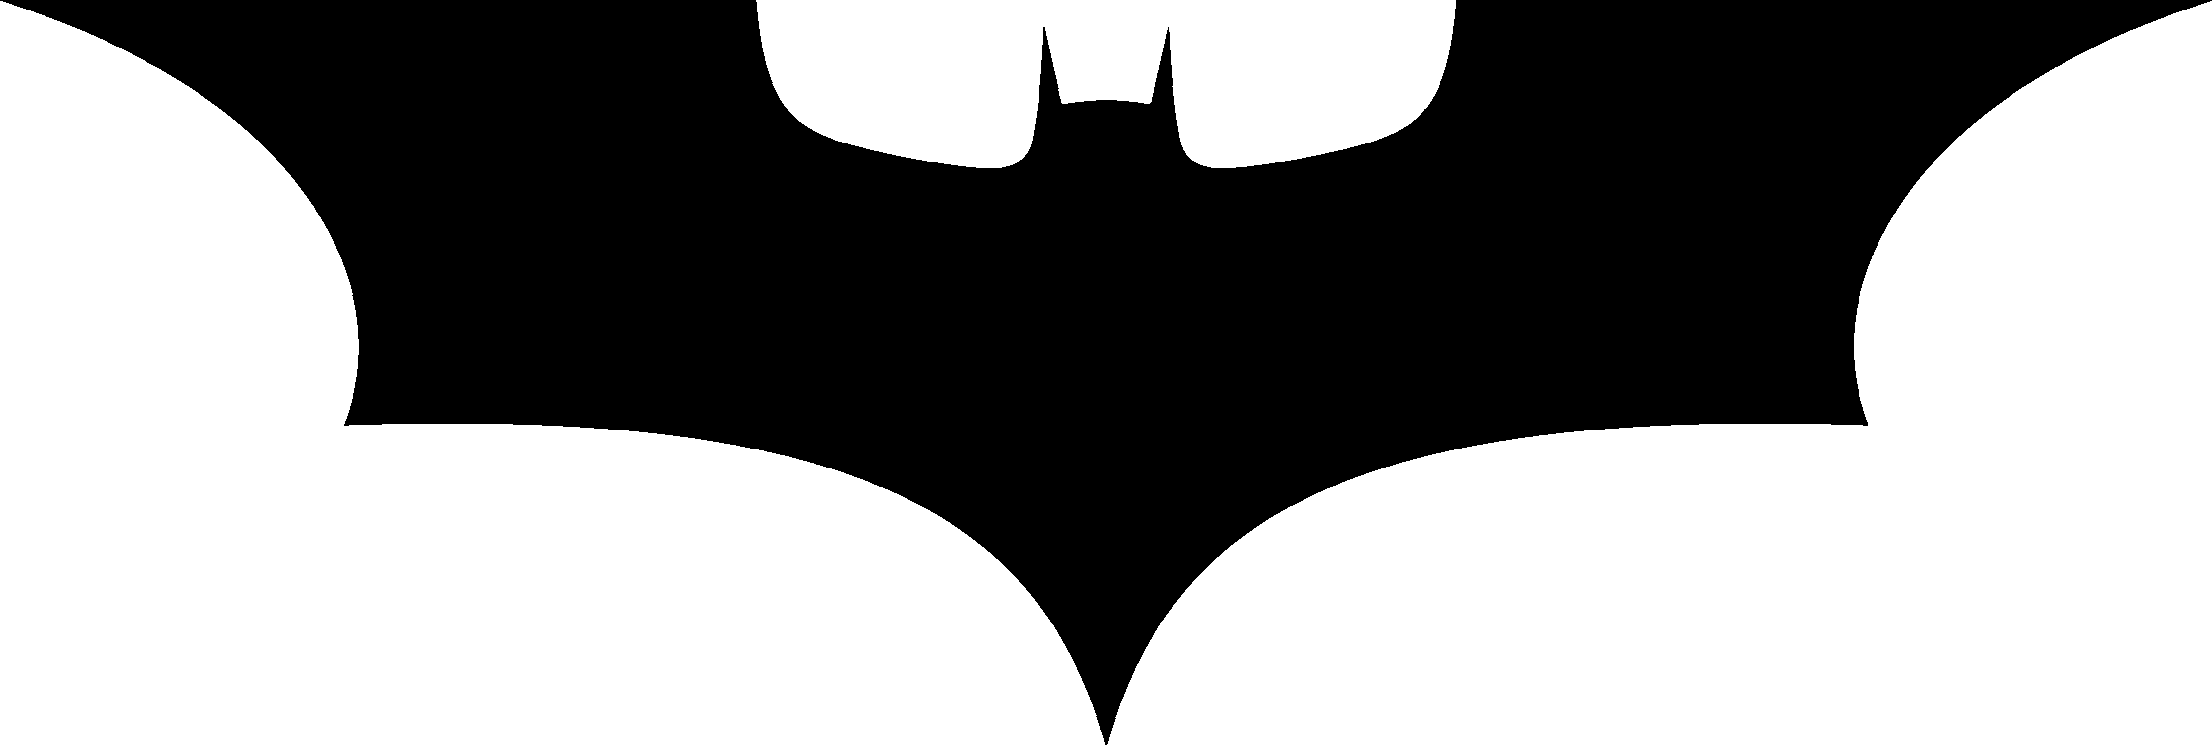 BATMAN Symbol Clip Art - ClipArt Best